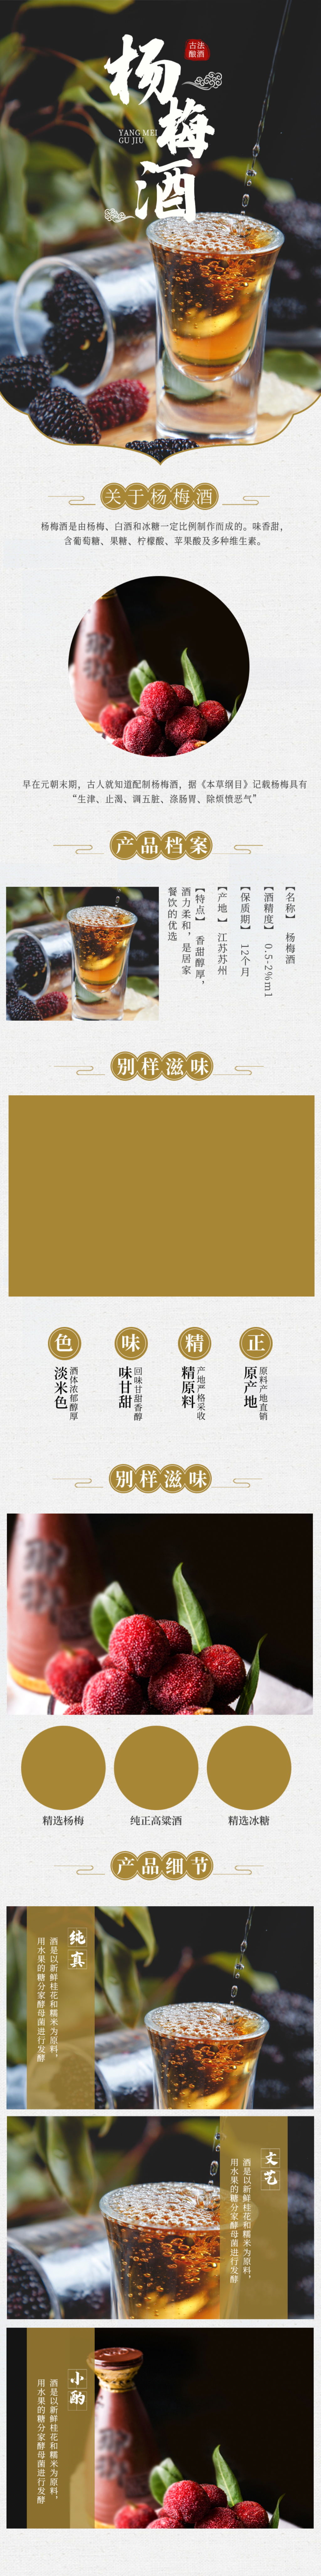 仙林青梅酒广告拍摄地图片